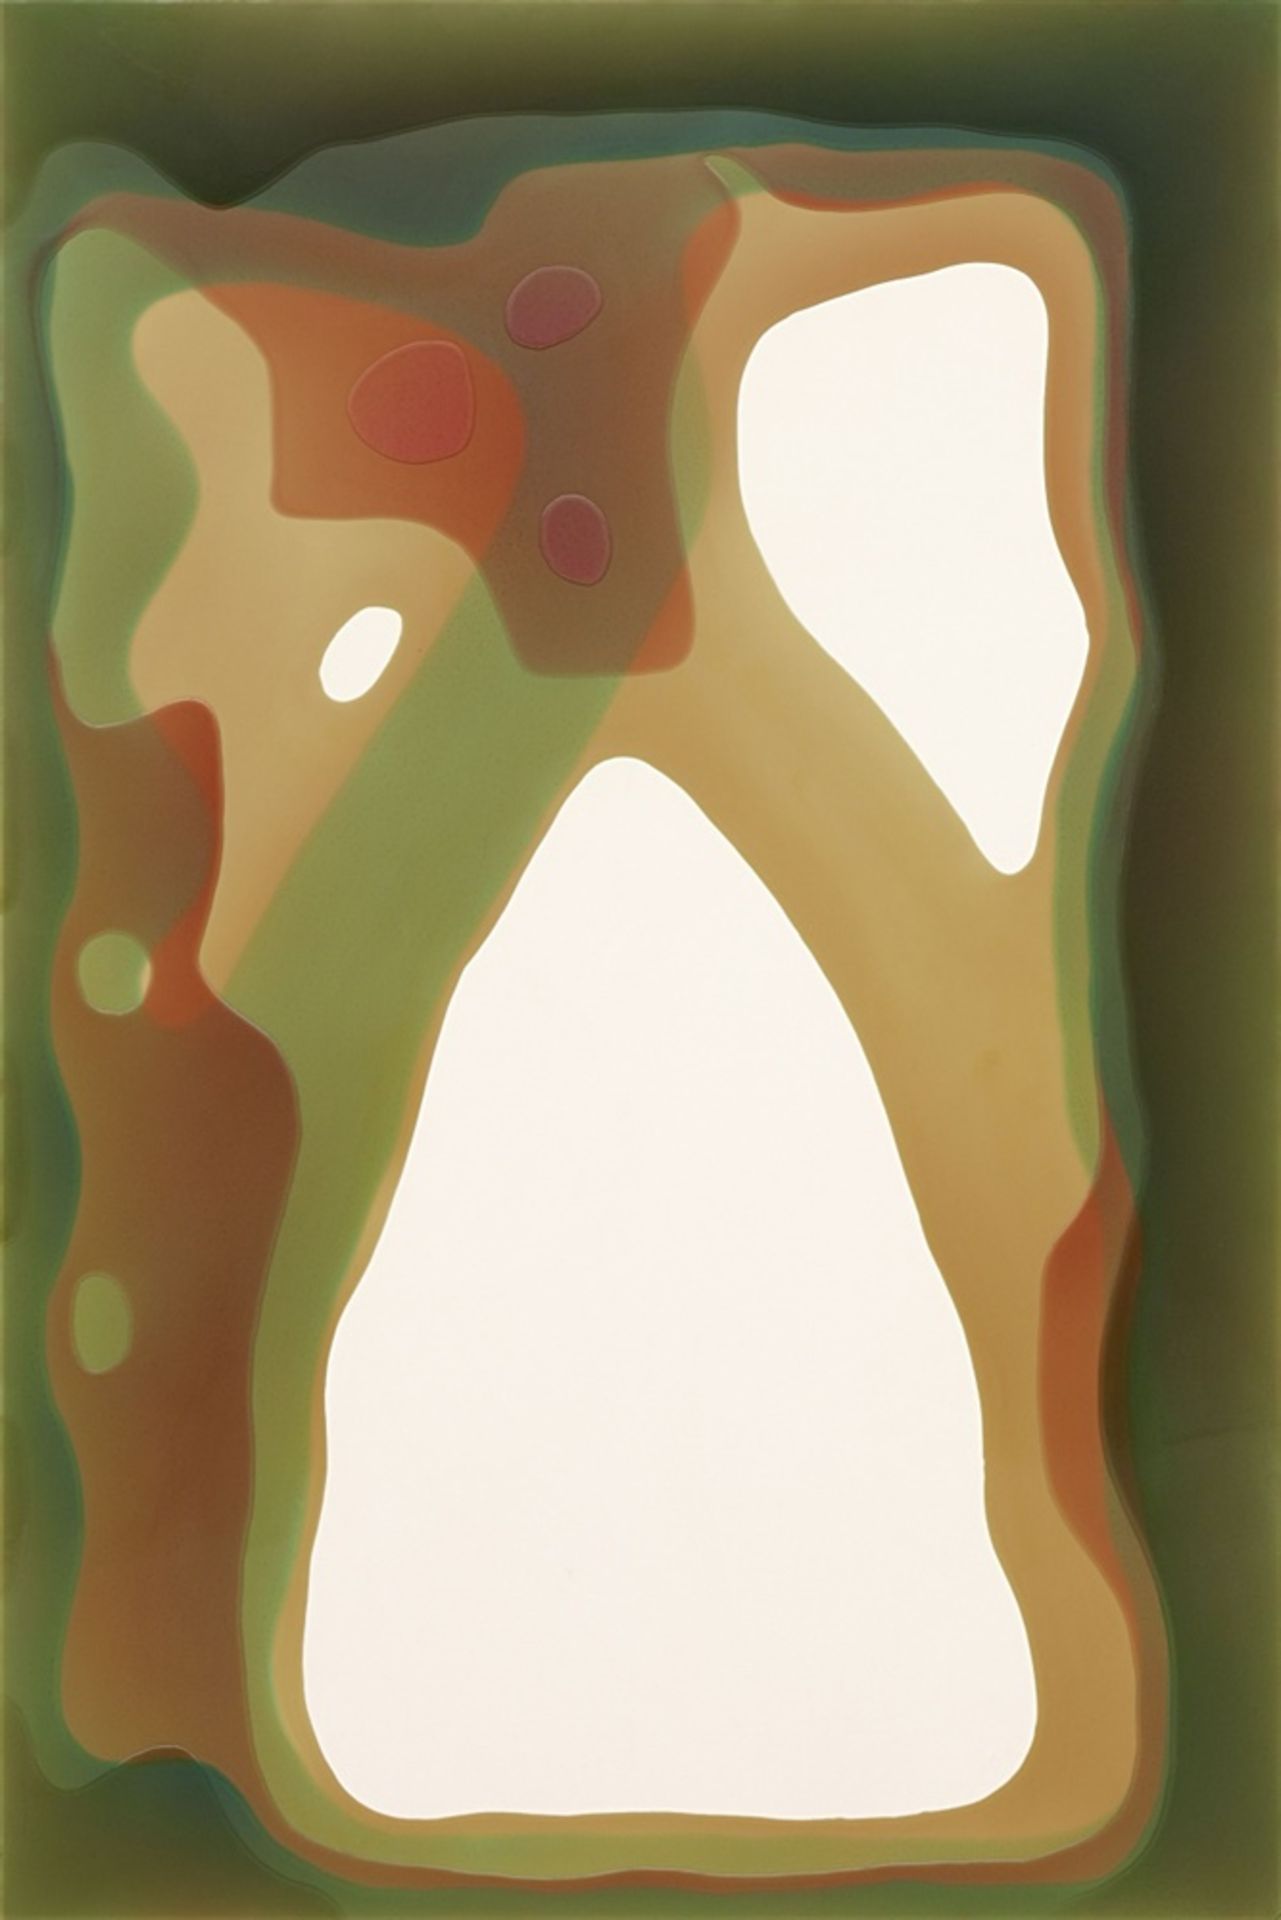 Peter ZimmermannOhne TitelKunstharz auf Leinwand 180 x 120,5 cm. Rückseitig auf der Leinwand